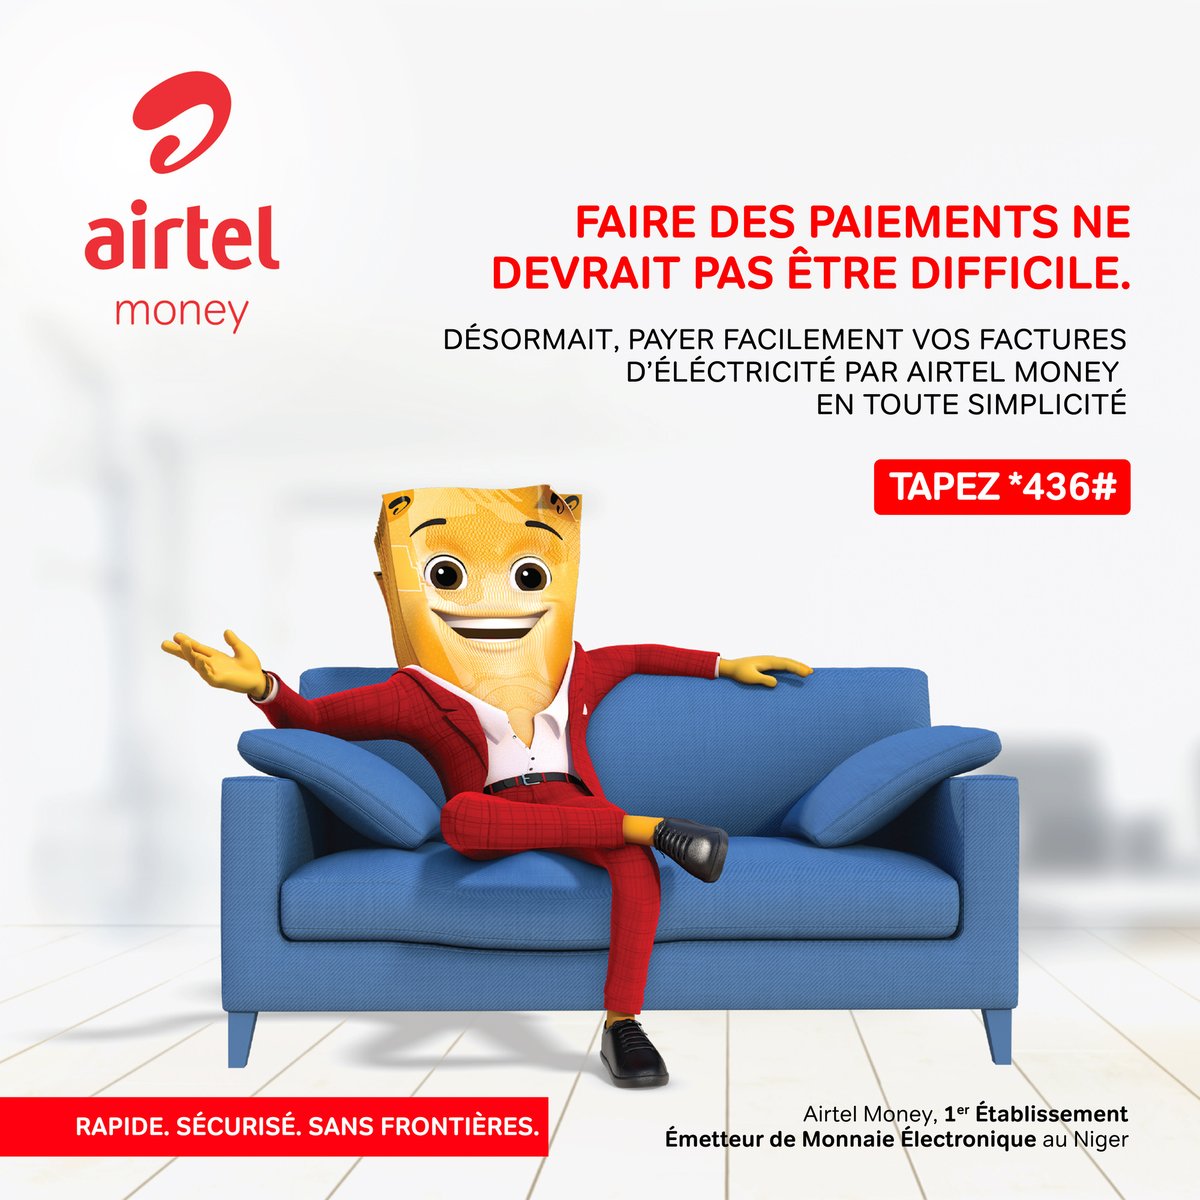 Paie tes factures d’électricité via ton compte Airtel Money à tout moment. C’est rapide simple et sécurisé !

✅Compose *436# 

Airtel Money, 1er Établissement Emetteur de Monnaie Électronique au Niger.
#AirtelMoneyNe